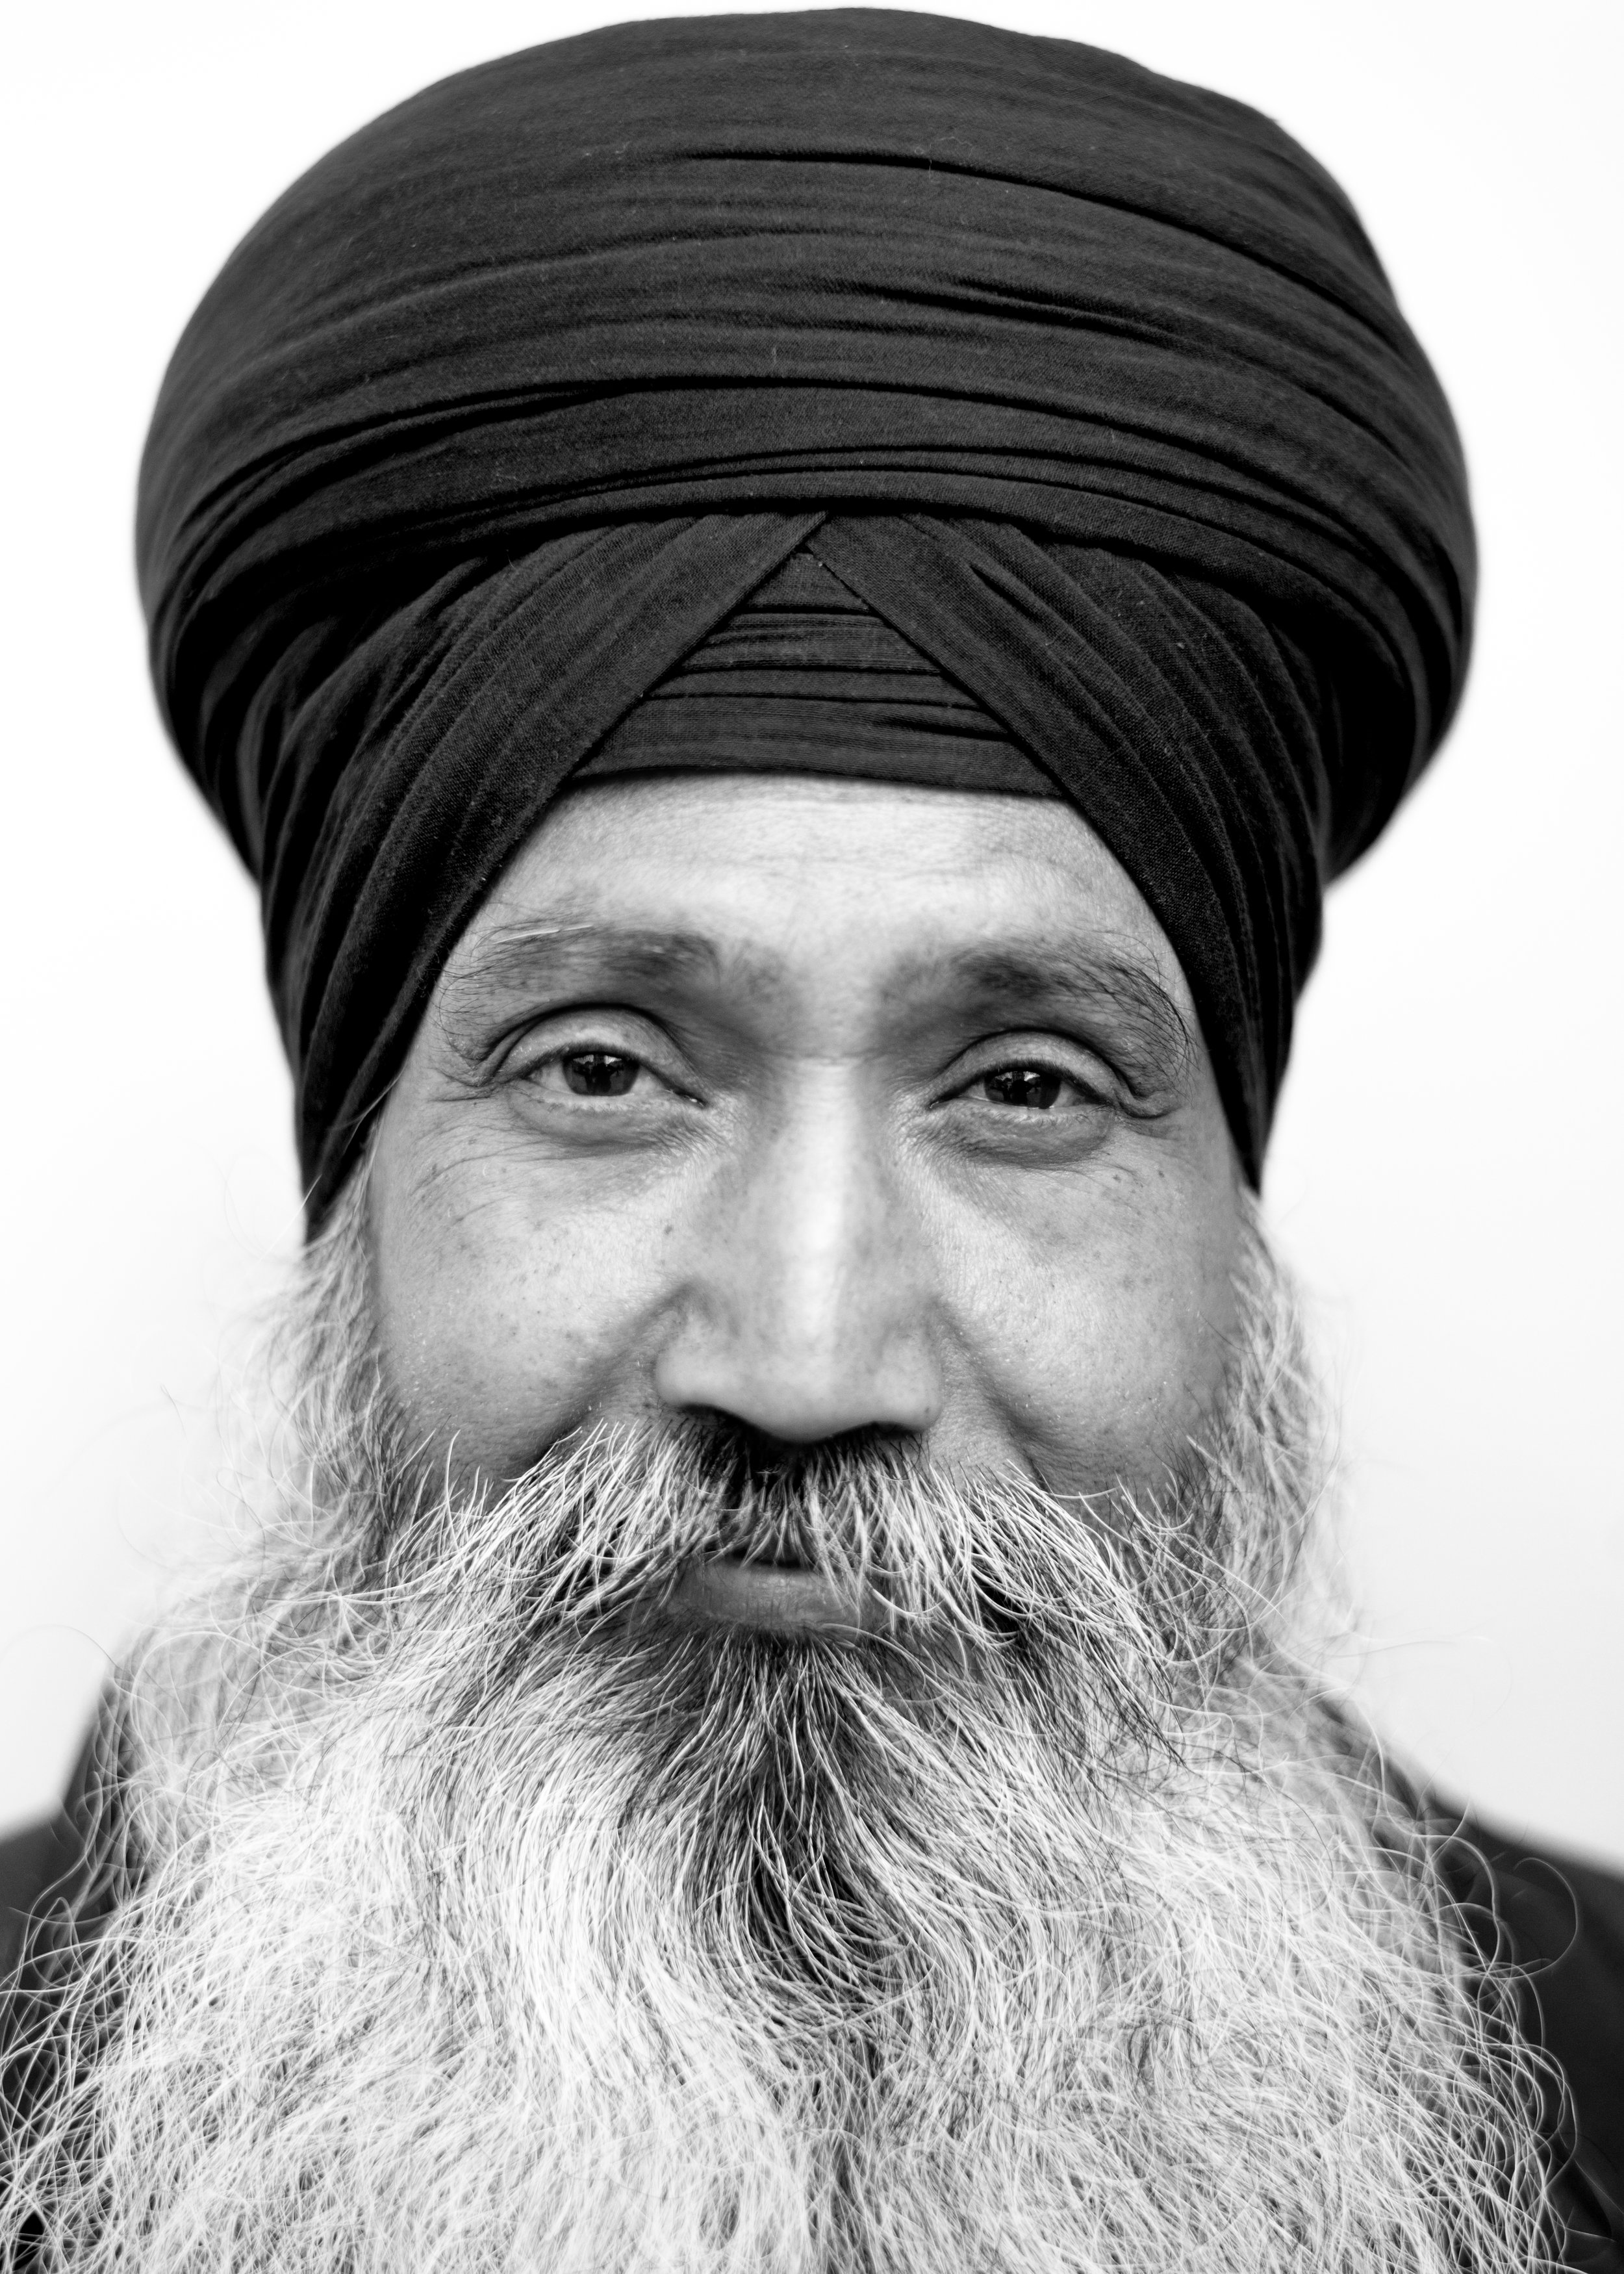 Sikh man, London